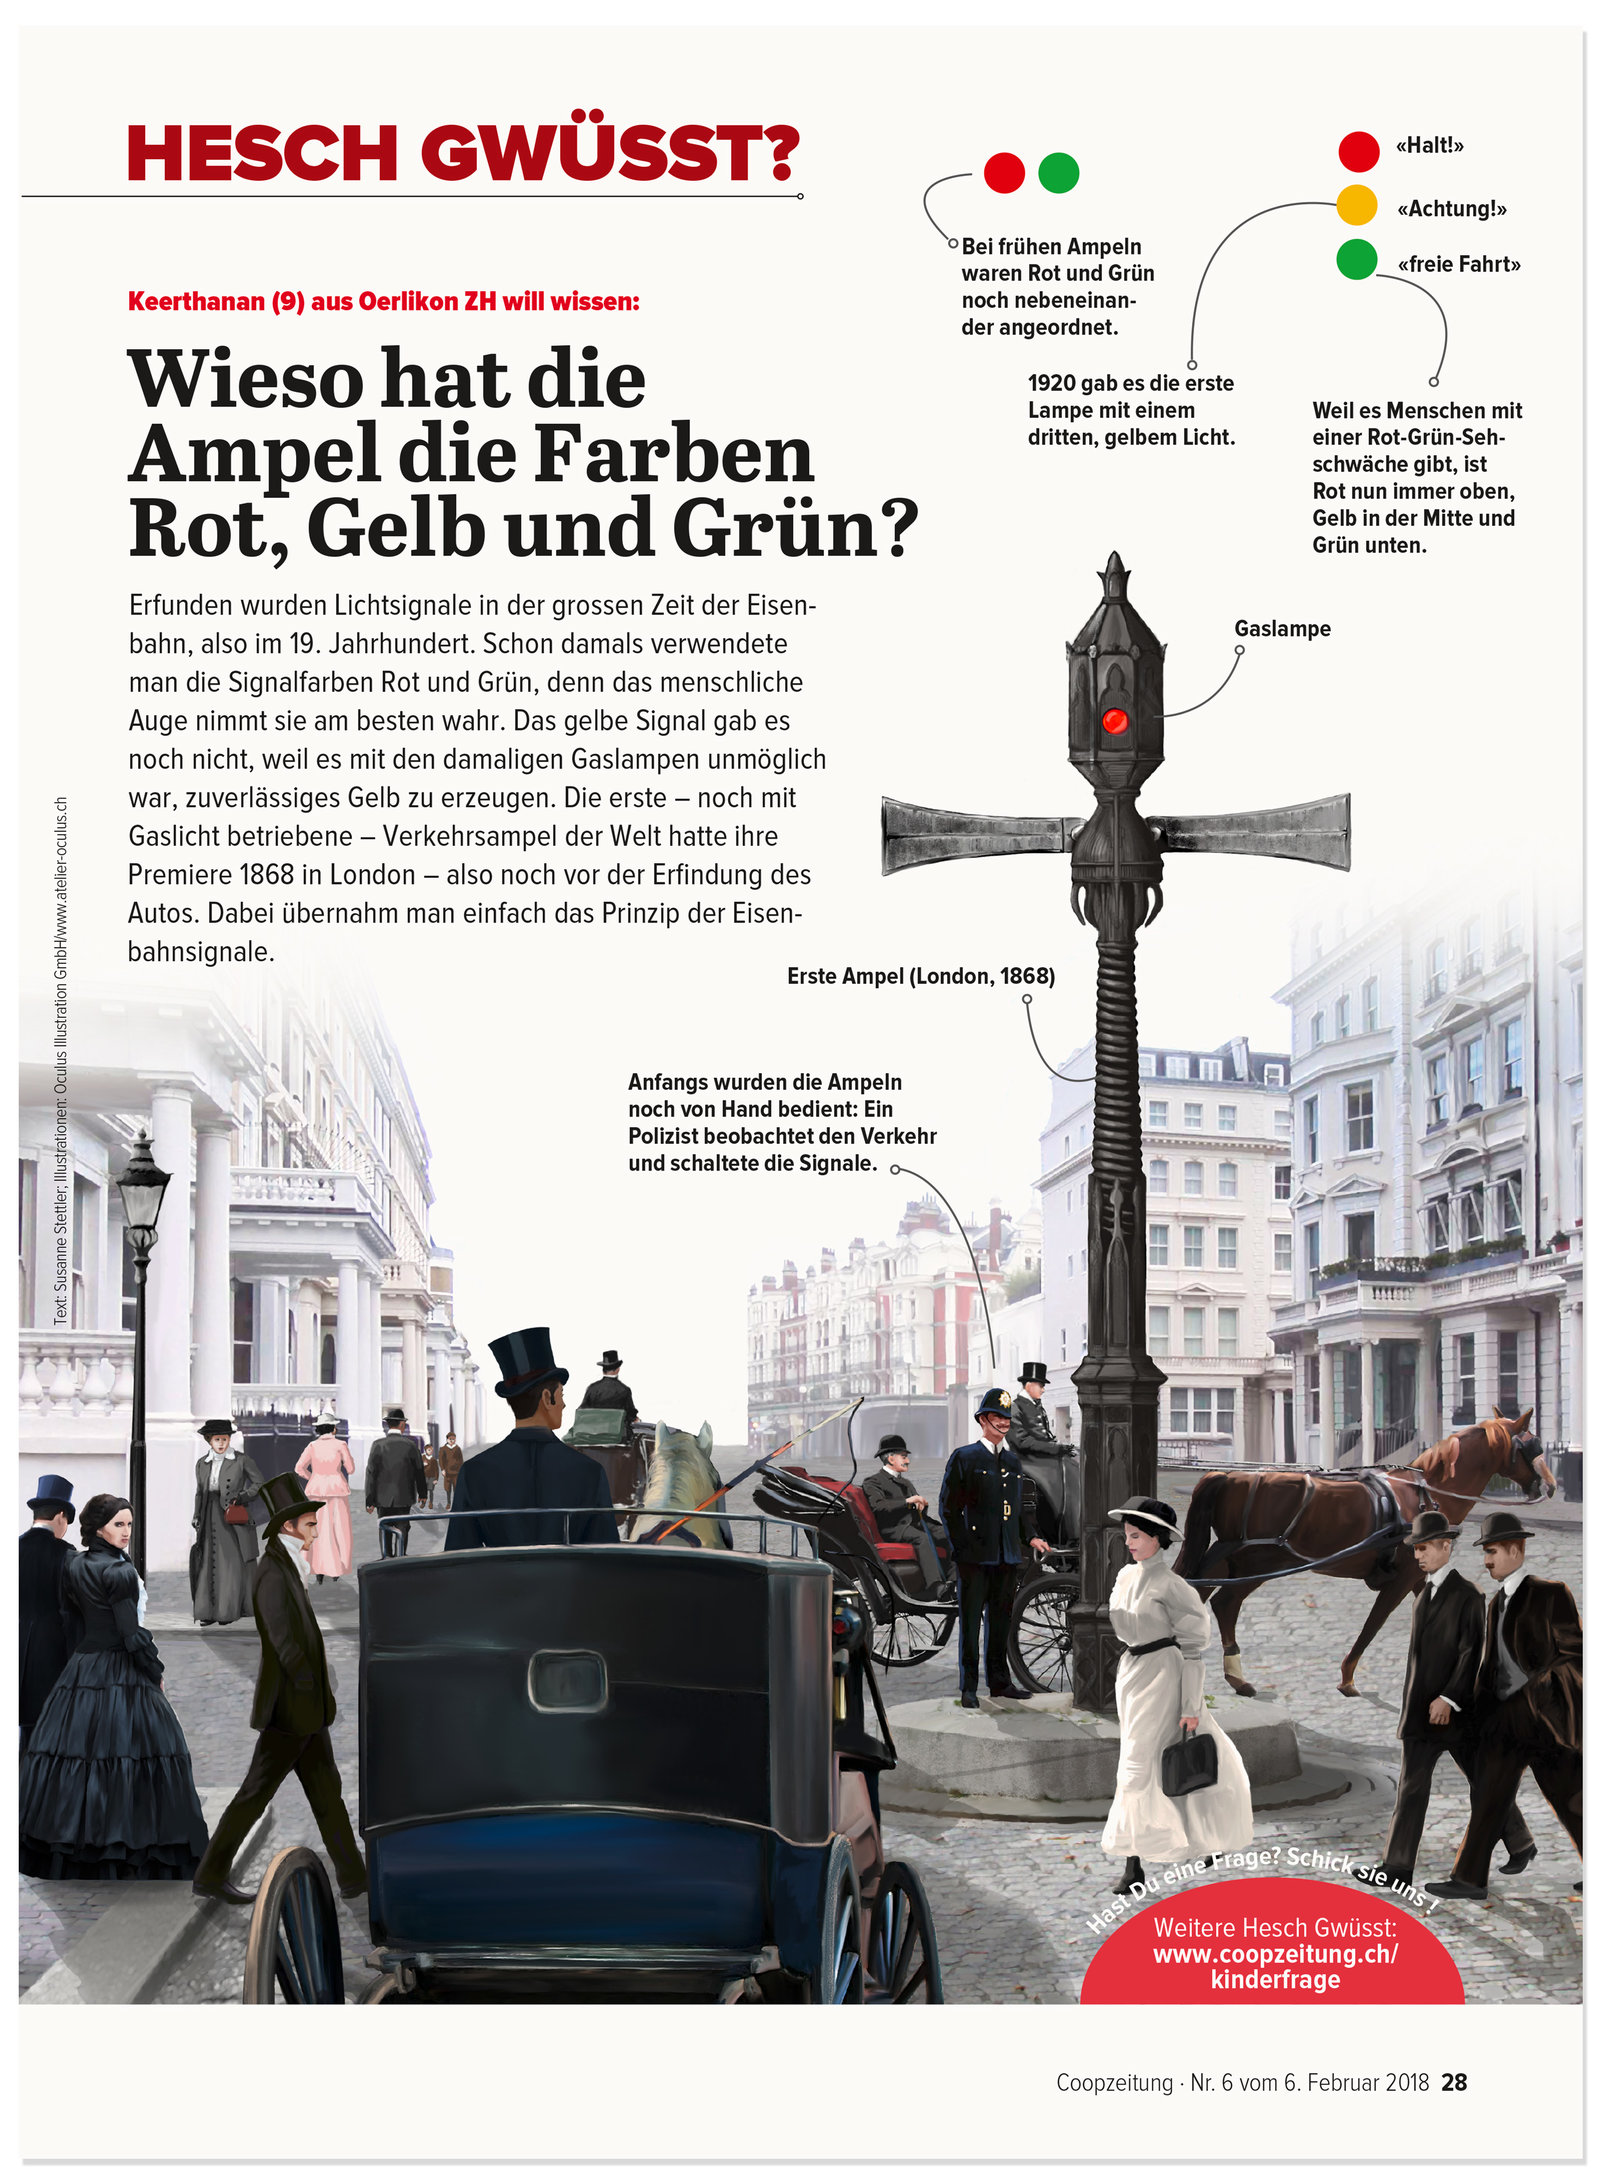 oculus-illustration-coopzeitung-hesch-gwuesst-ampel